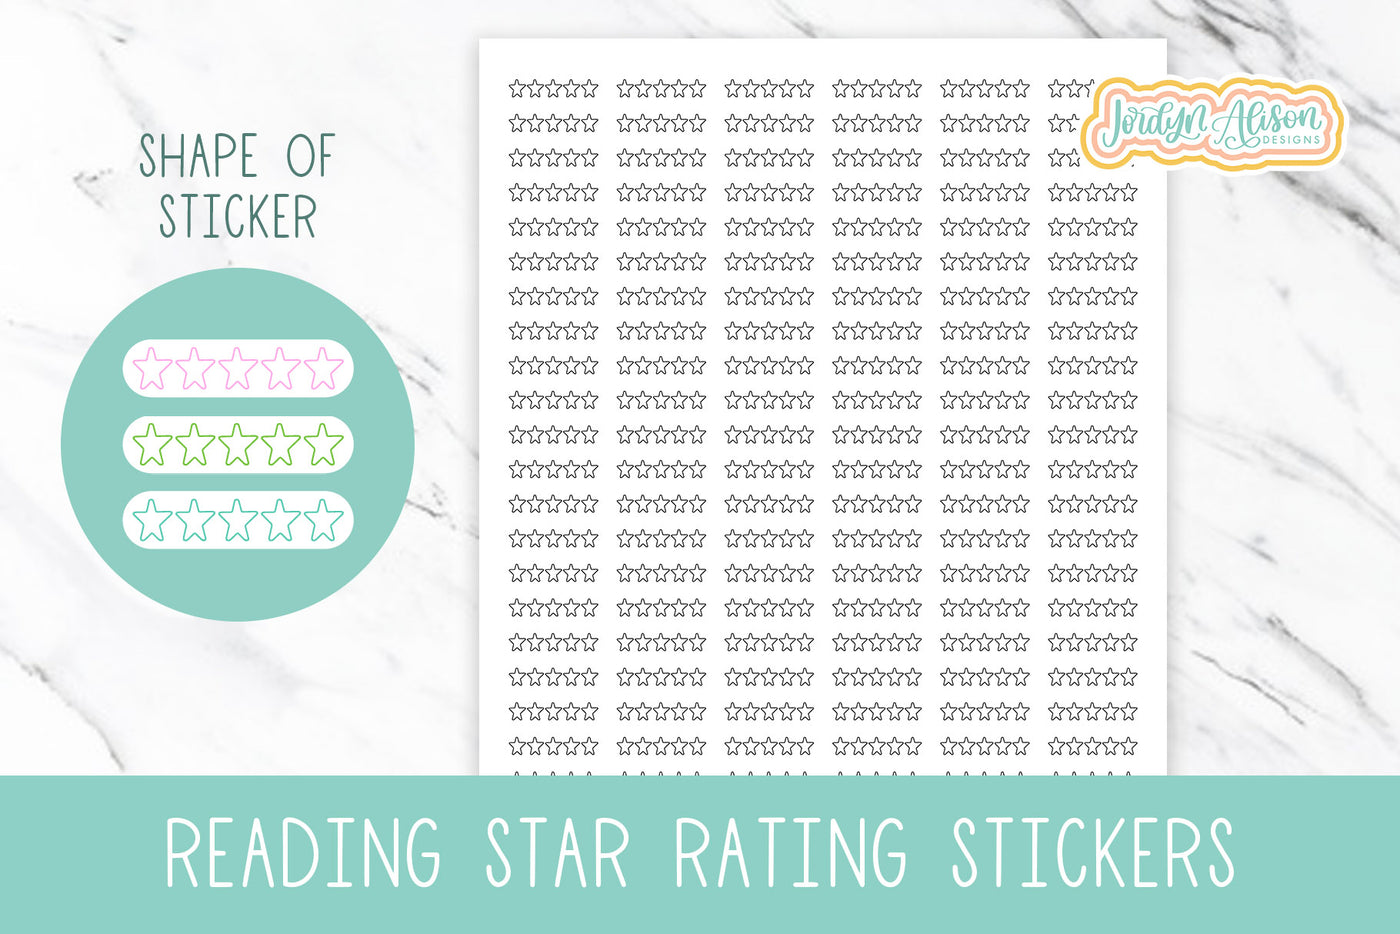 Star Ratings Sticker for Reading Journal